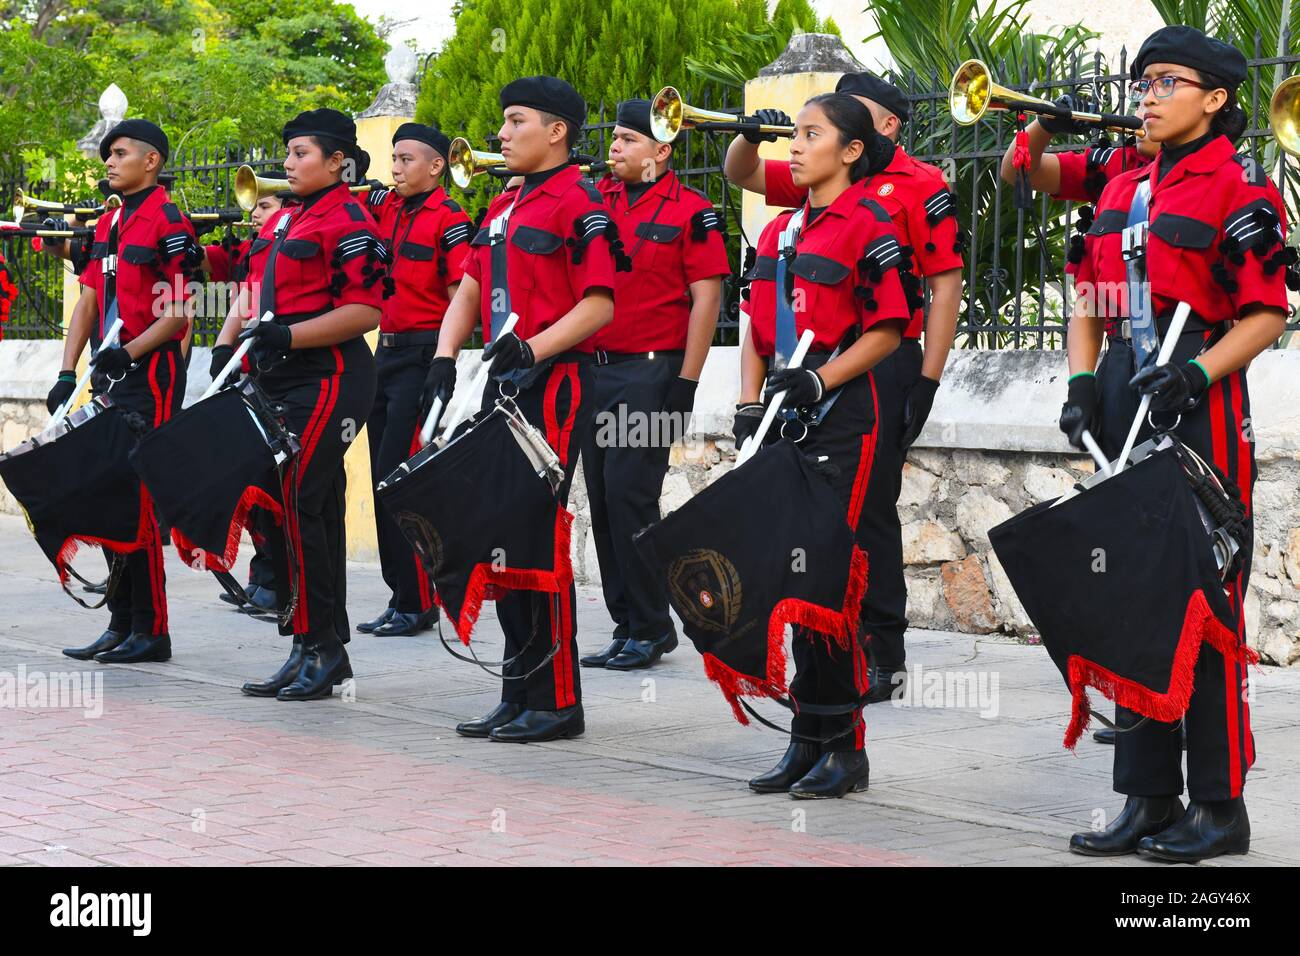 Marching Band, Aniversario del Inicio de la Revolución Mexicana, Merida, Mexiko Stockfoto